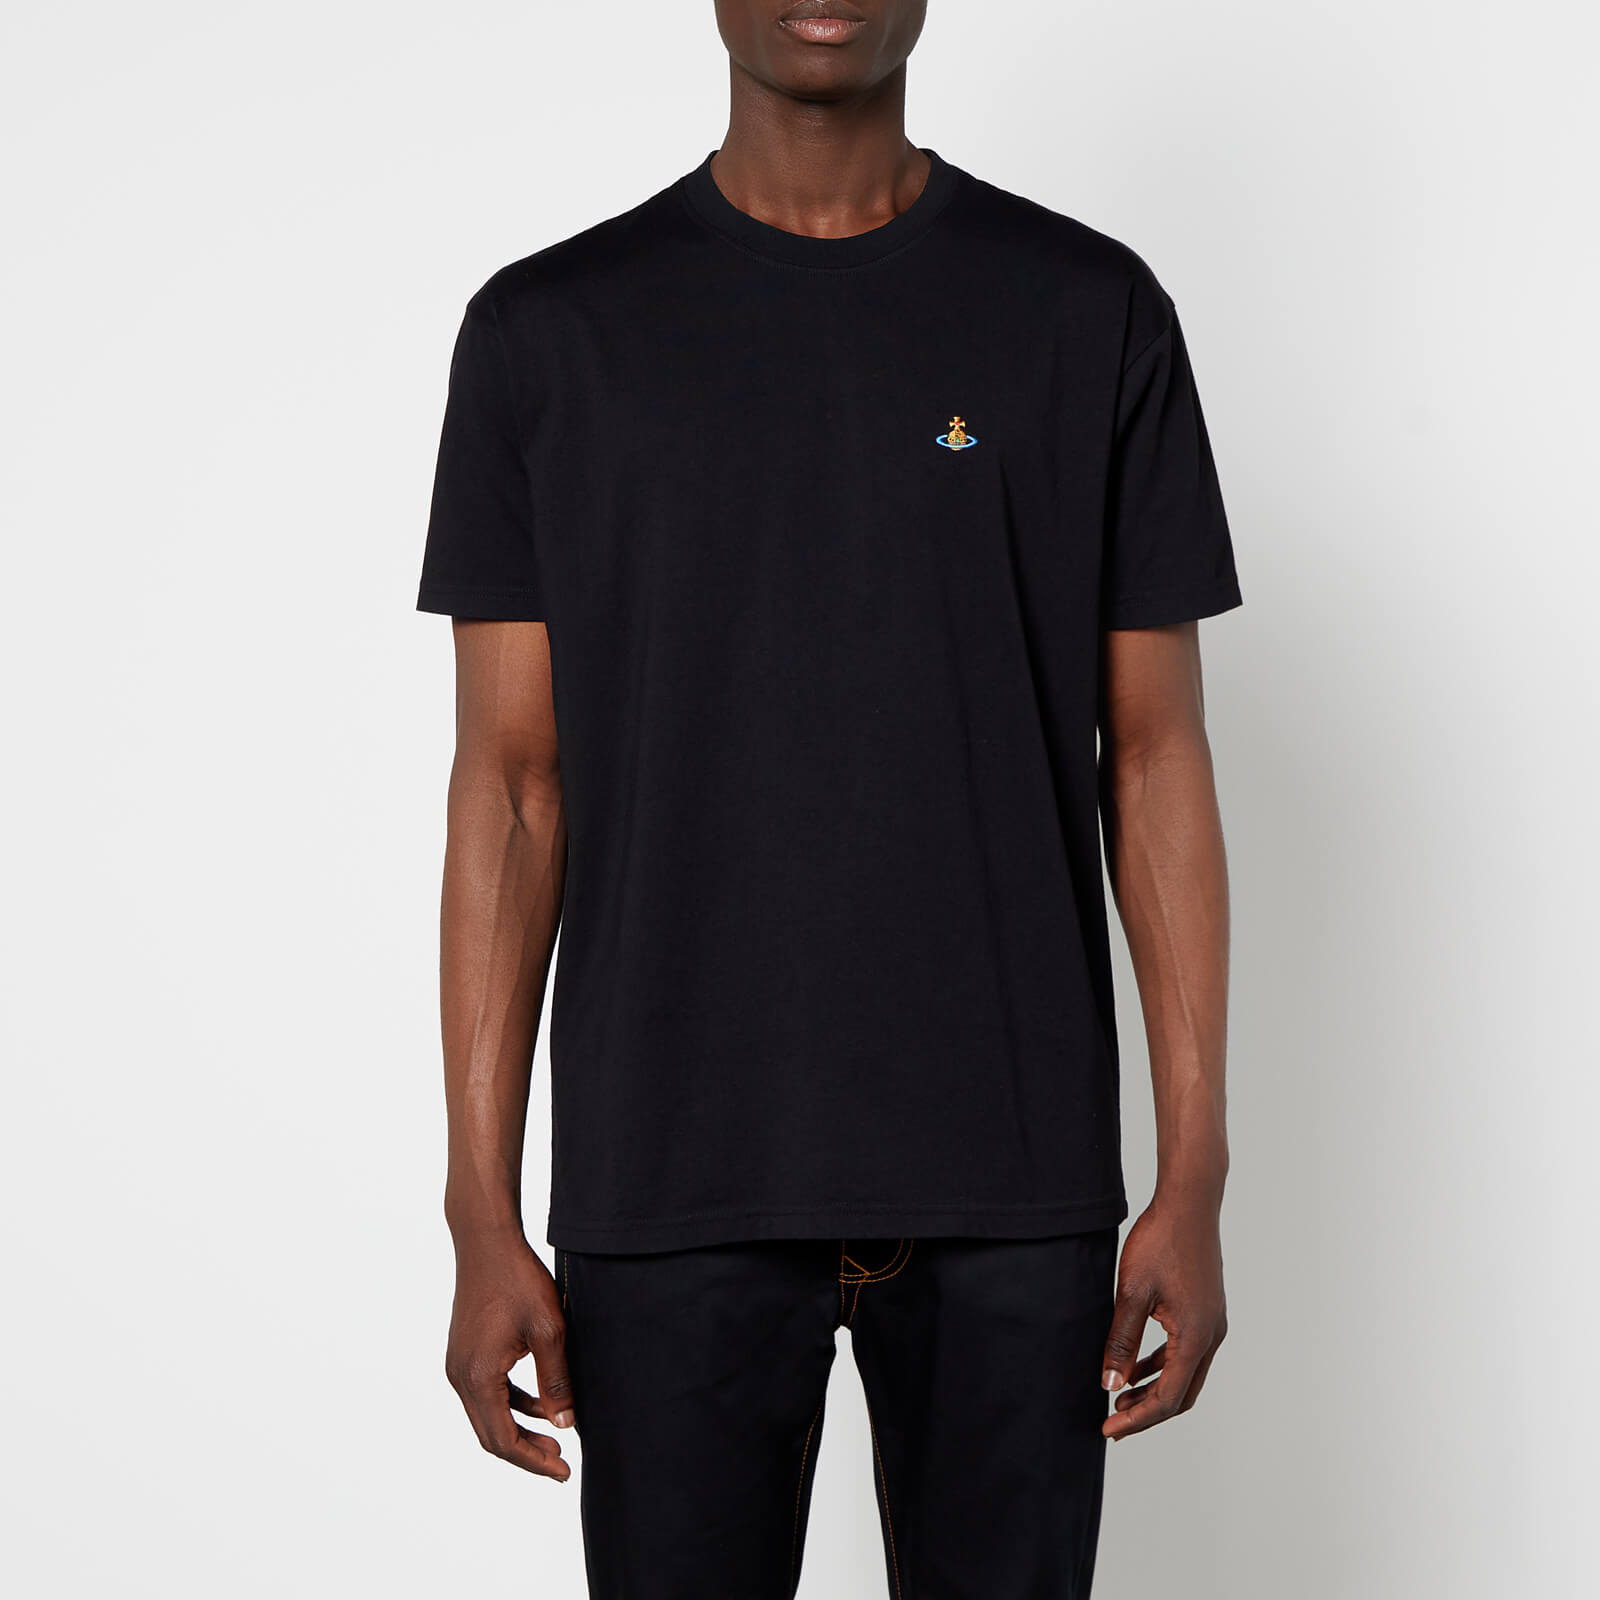 Vivienne Westwood Men's Multicolor Orb Classic T-Shirt - Black - S